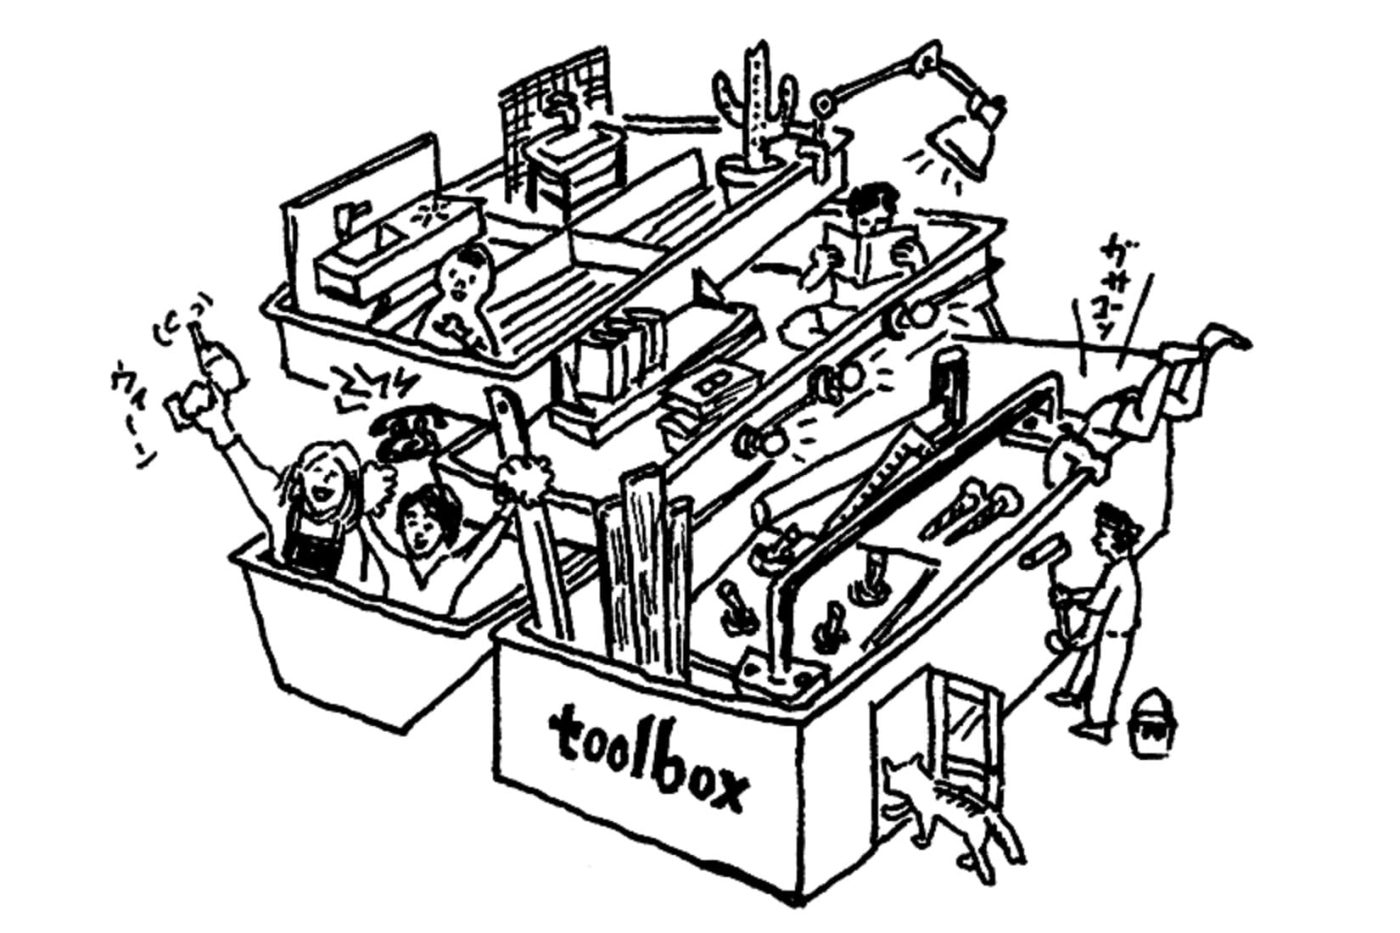 toolboxのコンセプトは「自分の空間を編集するための道具箱」。道具箱の中には、魅力的な素材だけではなく、編集するために必要な「手立て」や「アイデア」を一緒に用意していきたいと考えています。